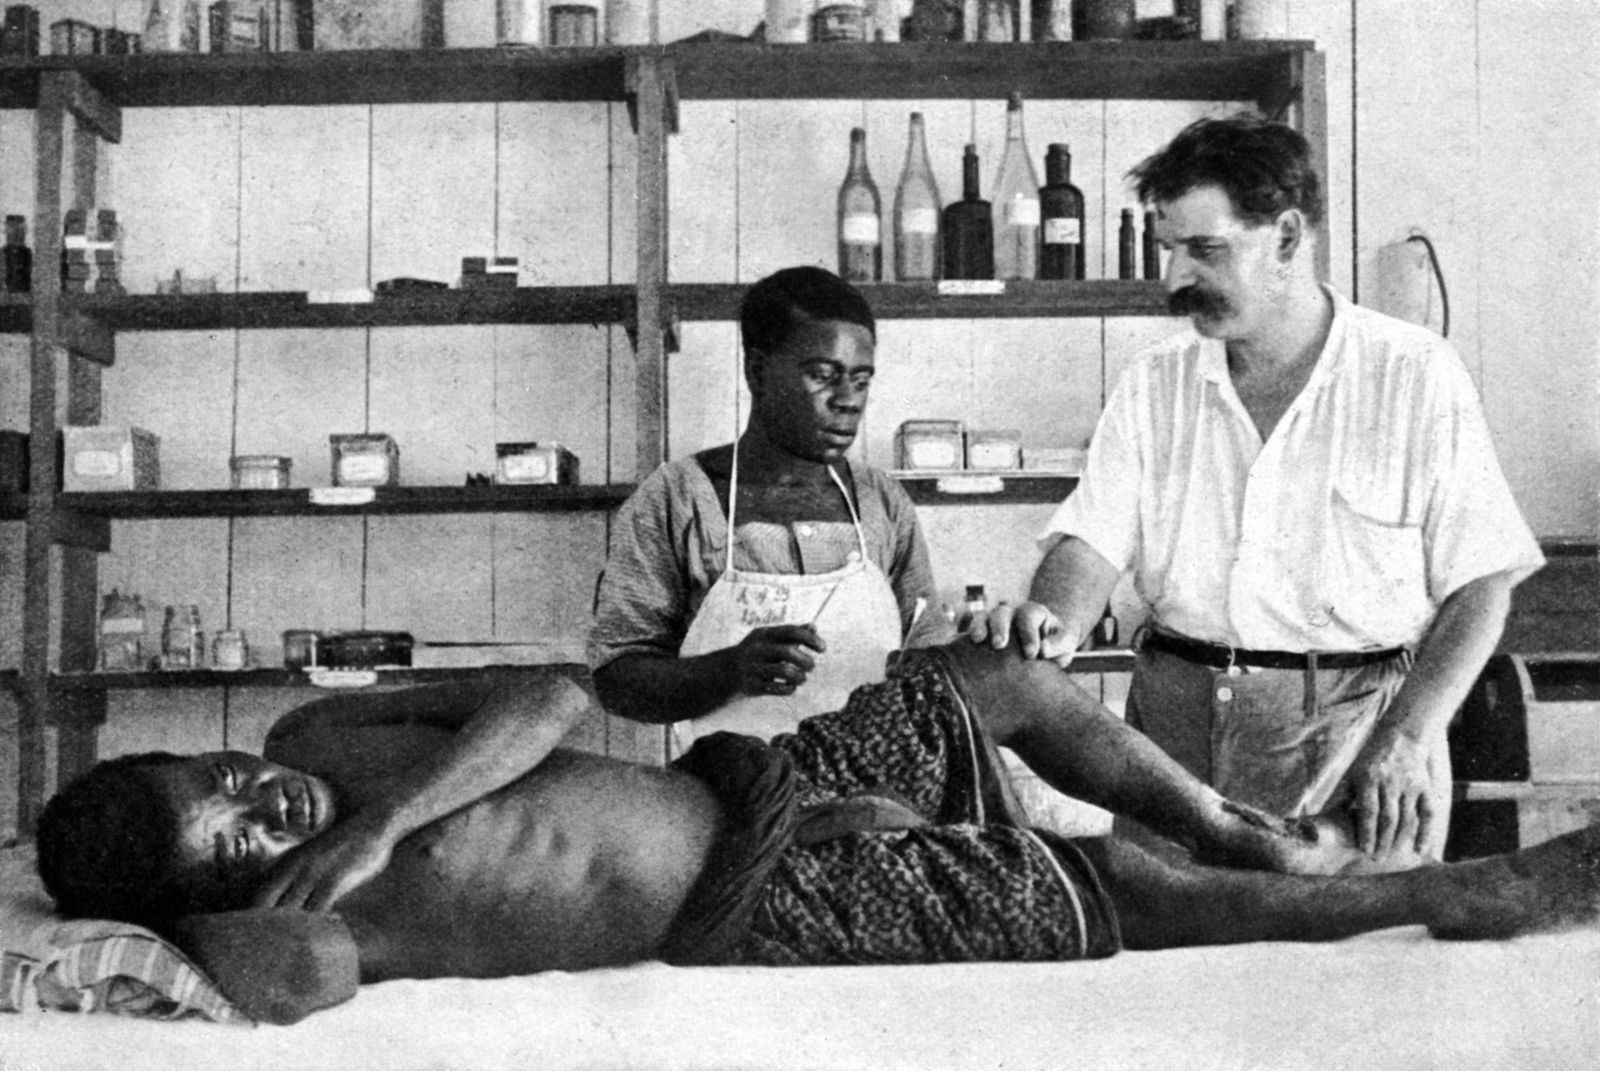 Les deux photos représentent le docteur Schweitzer, médecin français qui consacra sa vie à l'amélioration de la santé des Africains dans les cinquantes premières années du XX ème siècle.  